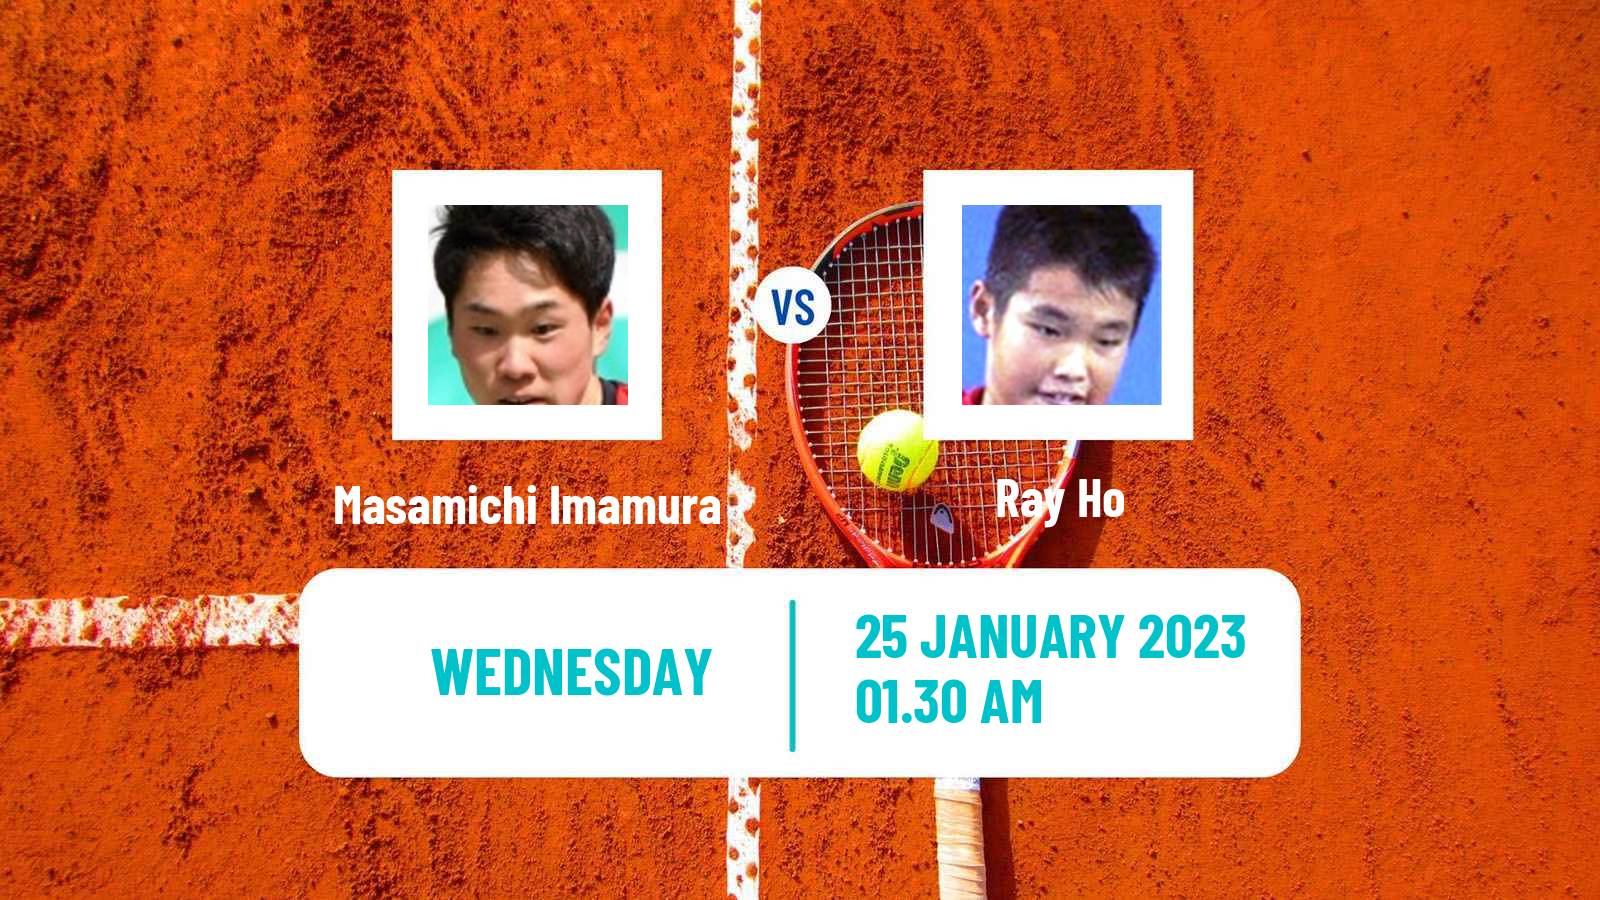 Tennis ITF Tournaments Masamichi Imamura - Ray Ho